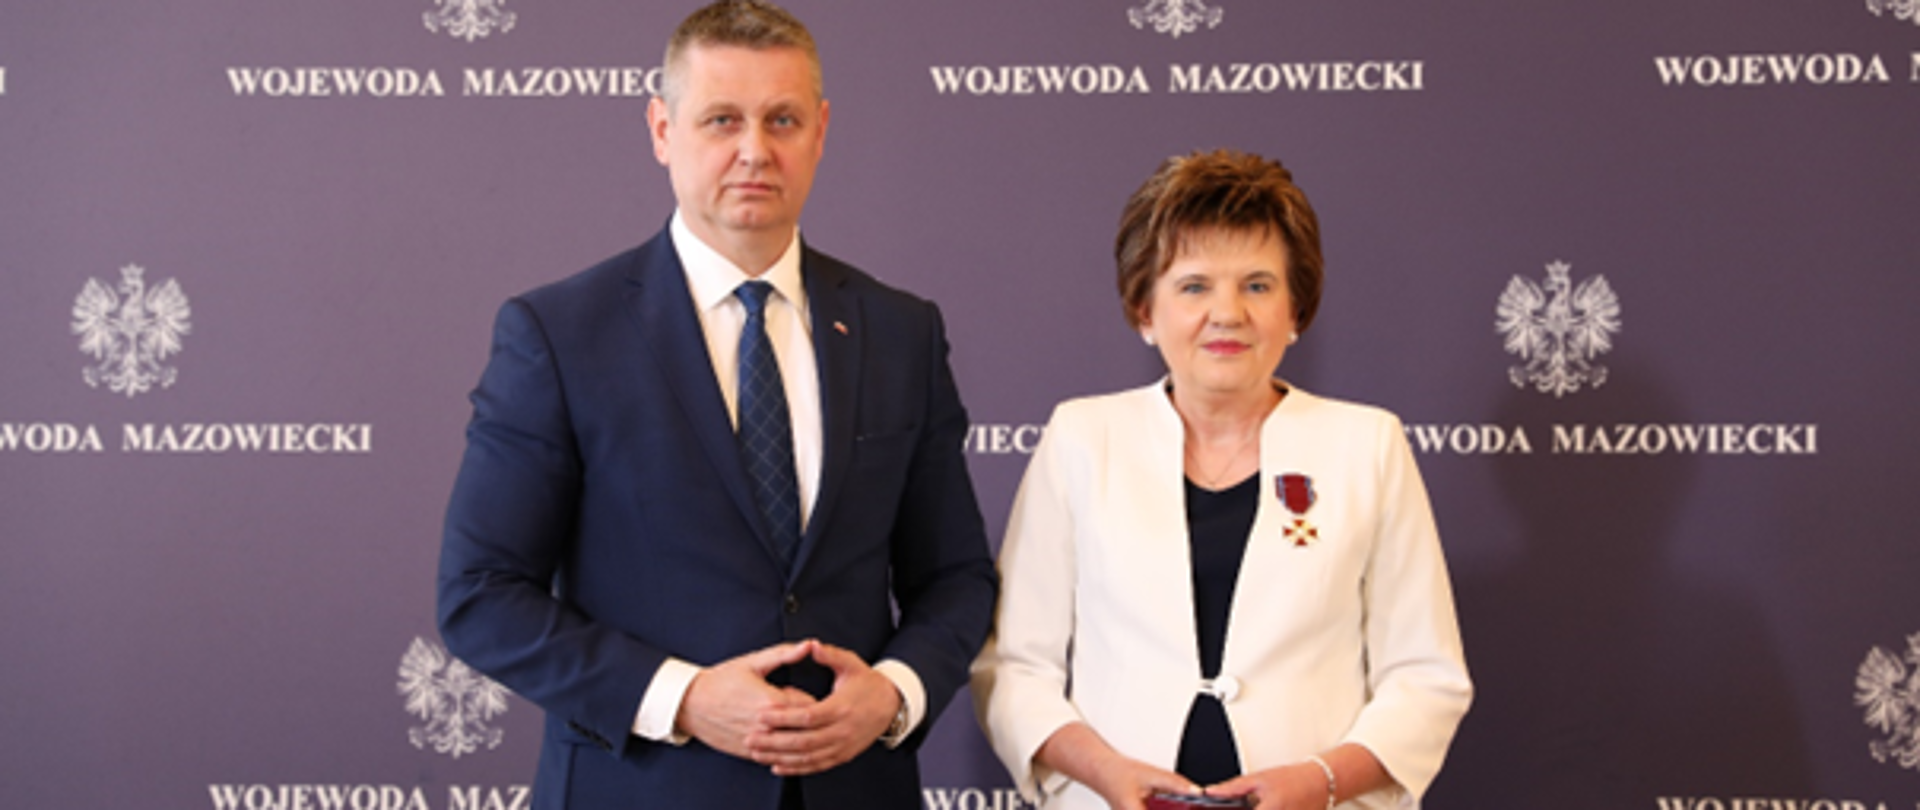 Wicewojewoda Mazowiecki wręczył odznaczenie państwowe naszej koleżance